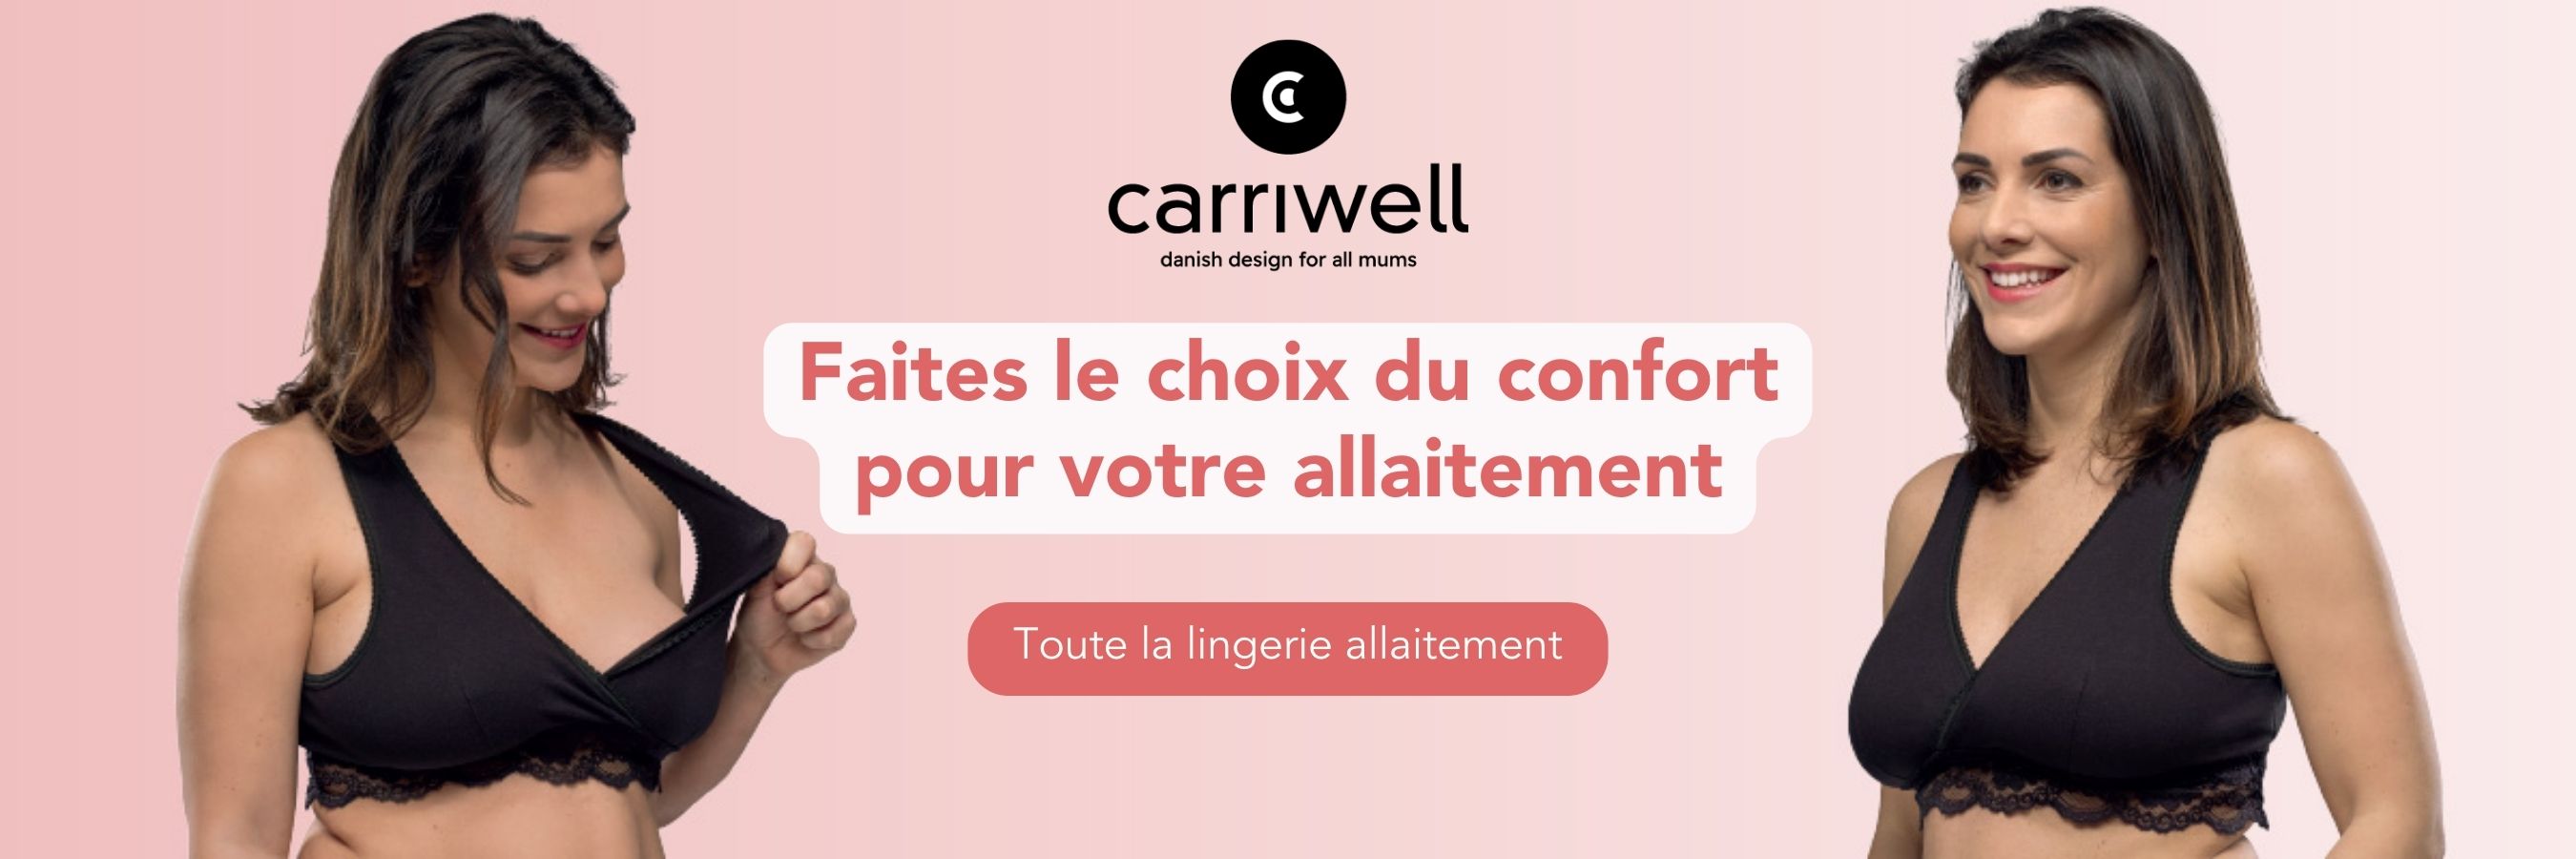 CARRIWELL Lingerie (kit mdia)